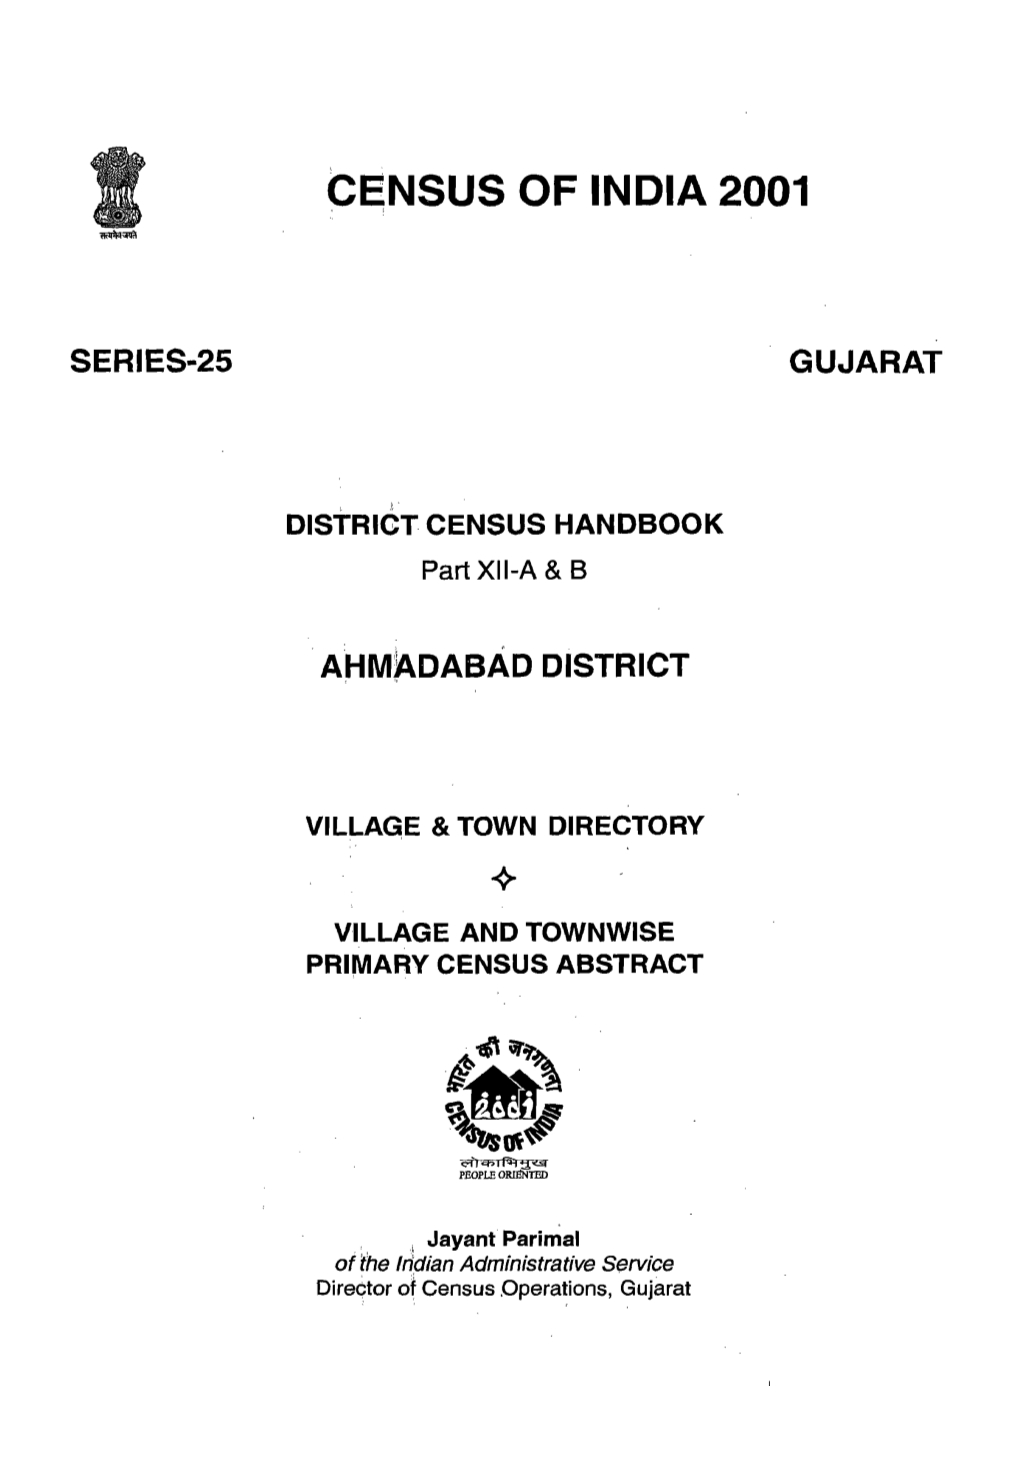 District Census Handbook, Ahmadabad, Part-I, Part